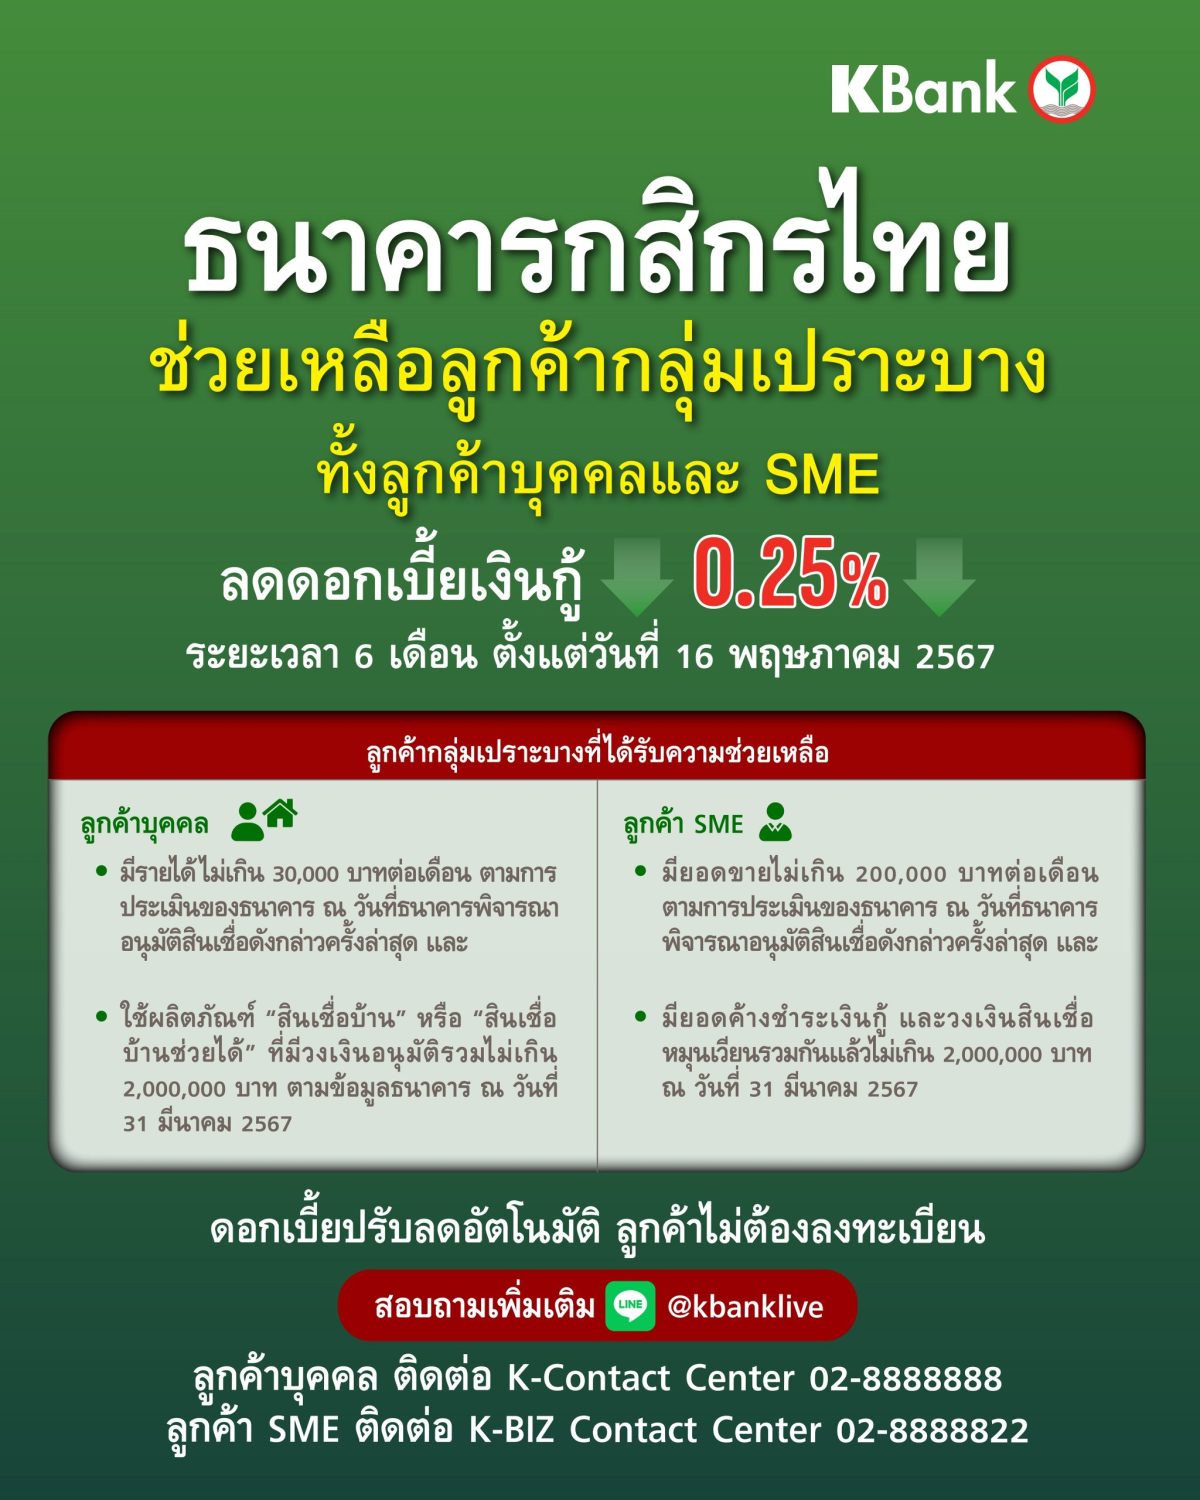 กสิกรไทยประกาศลดดอกเบี้ยช่วยเหลือลูกค้ากลุ่มเปราะบาง 0.25% เป็นระยะเวลา 6 เดือน ในช่วงที่เศรษฐกิจยังฟื้นตัวไม่เต็มที่